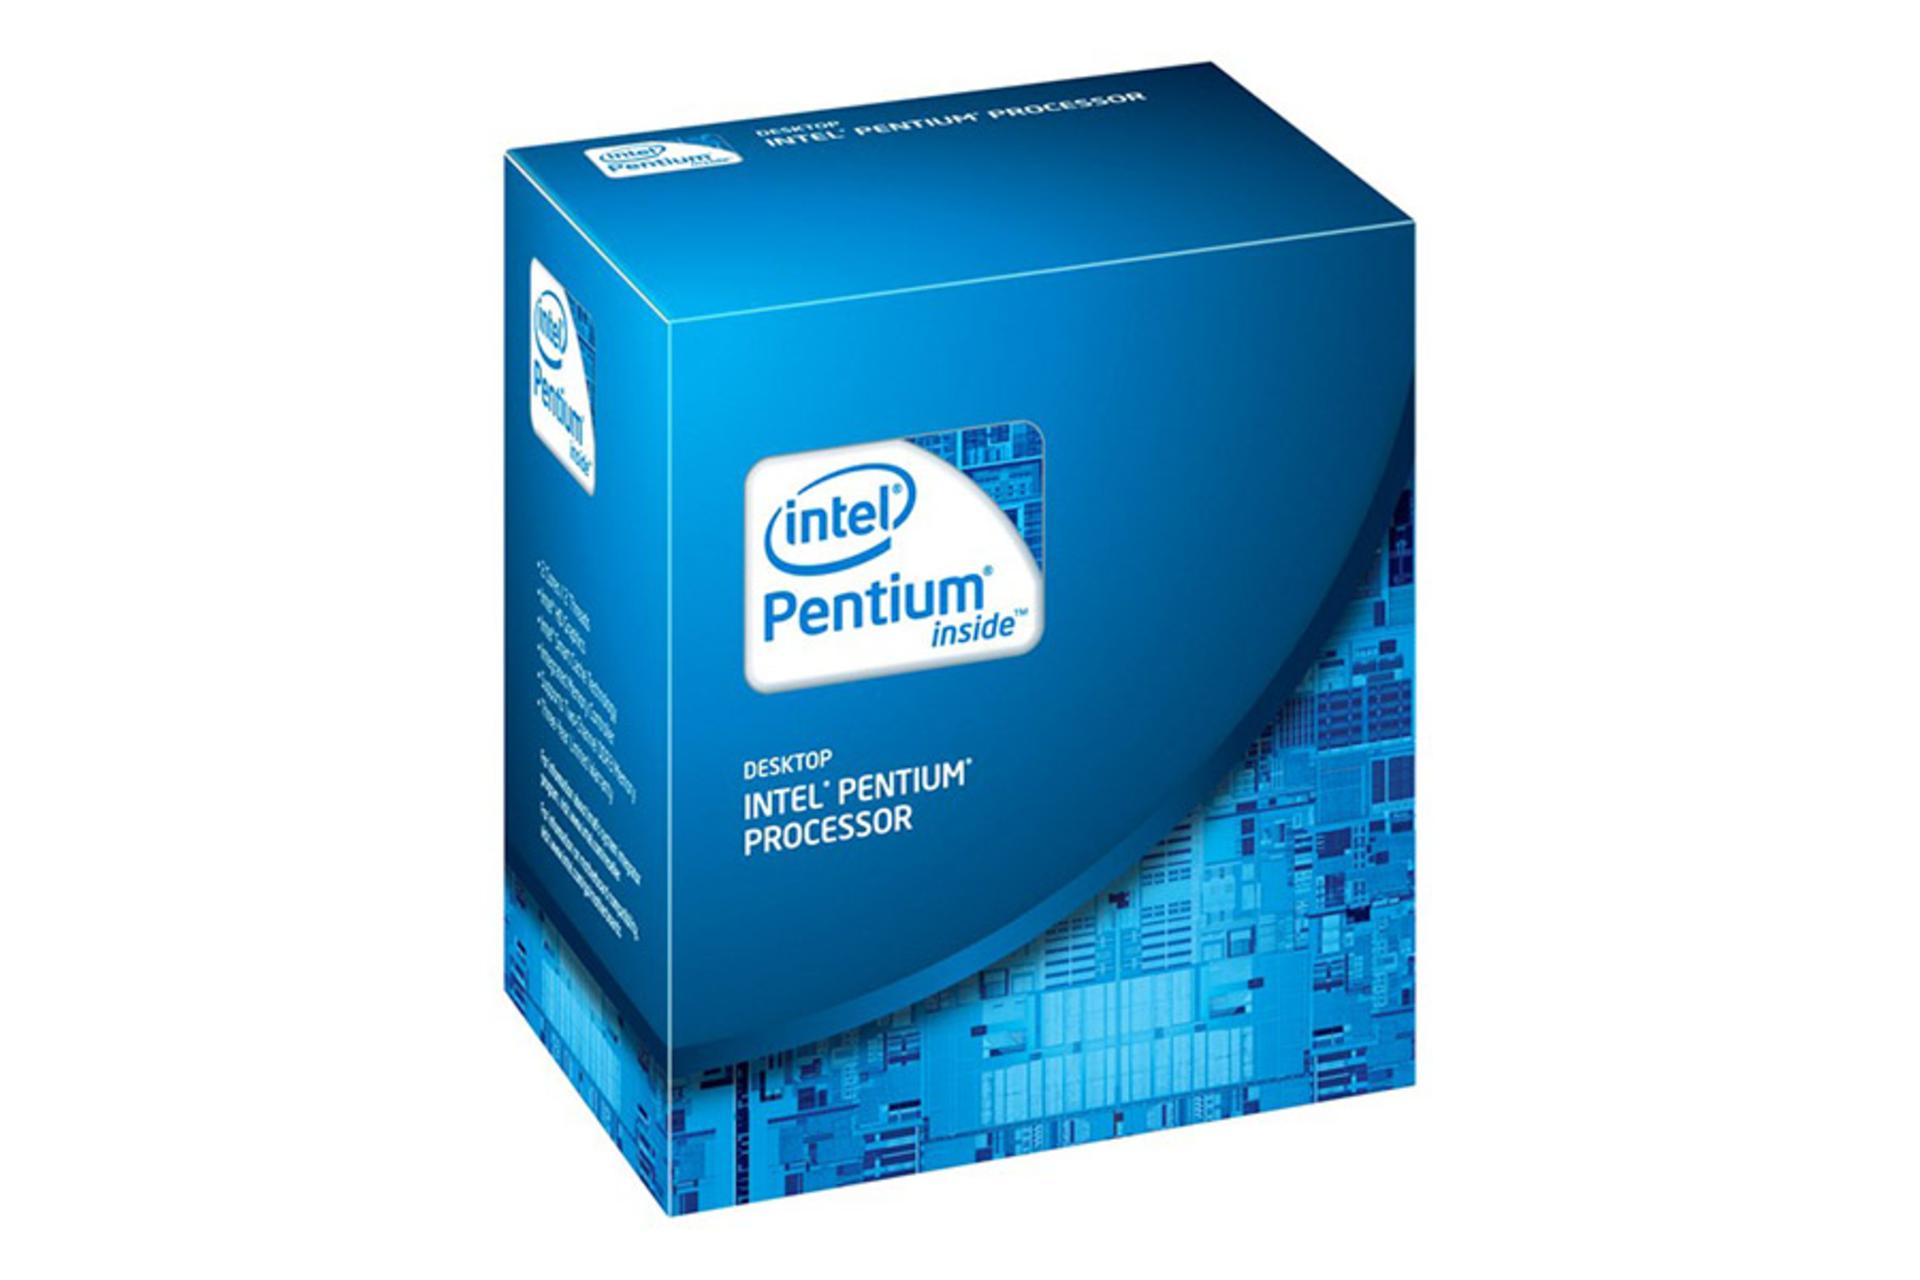 اینتل پنتیوم G850 / Intel Pentium G850